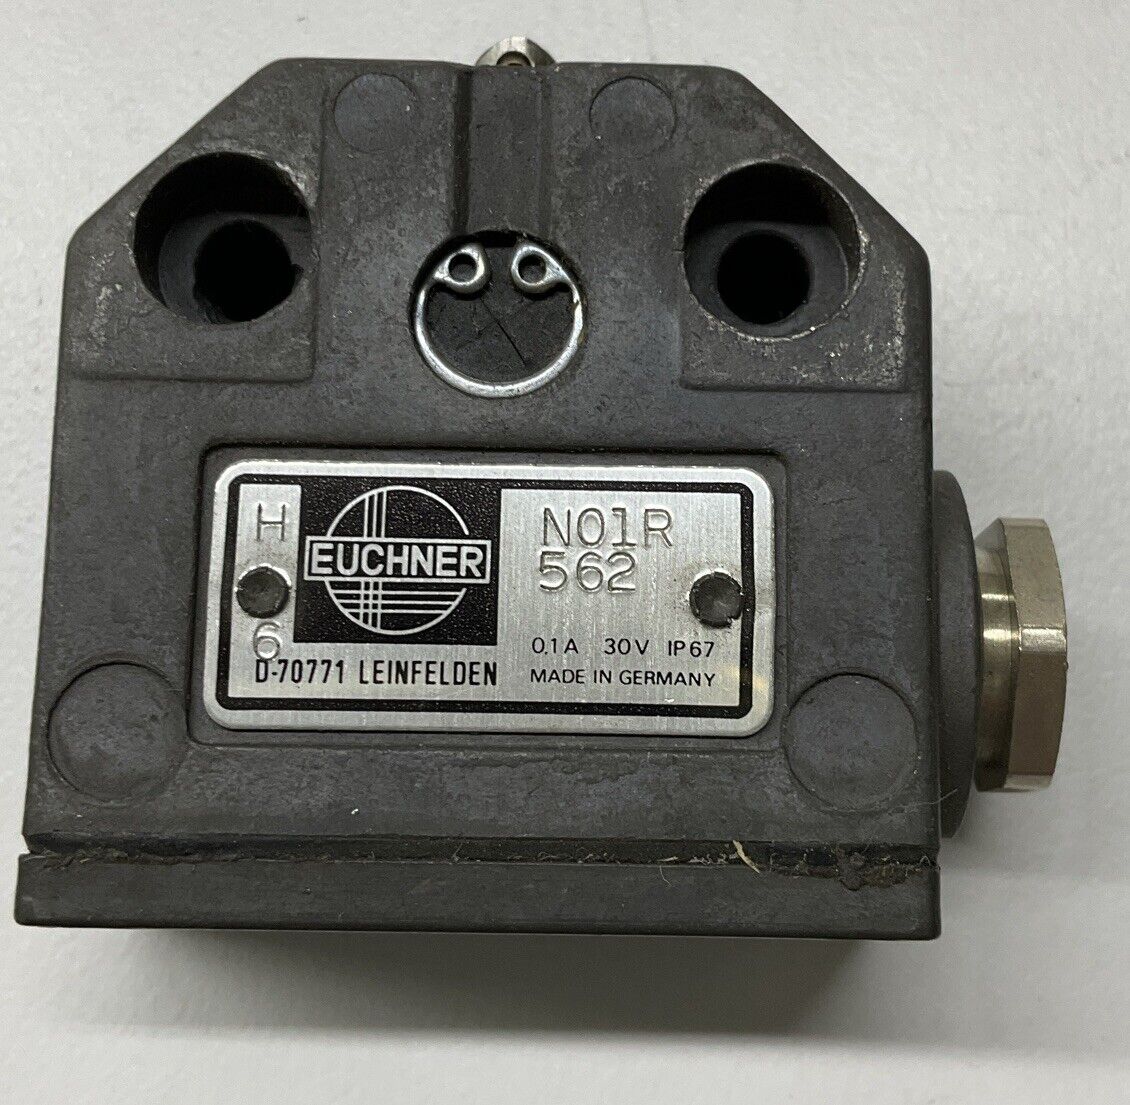 Euchner N01R562 Roller Plunger Limit Switch (YE271) - 0